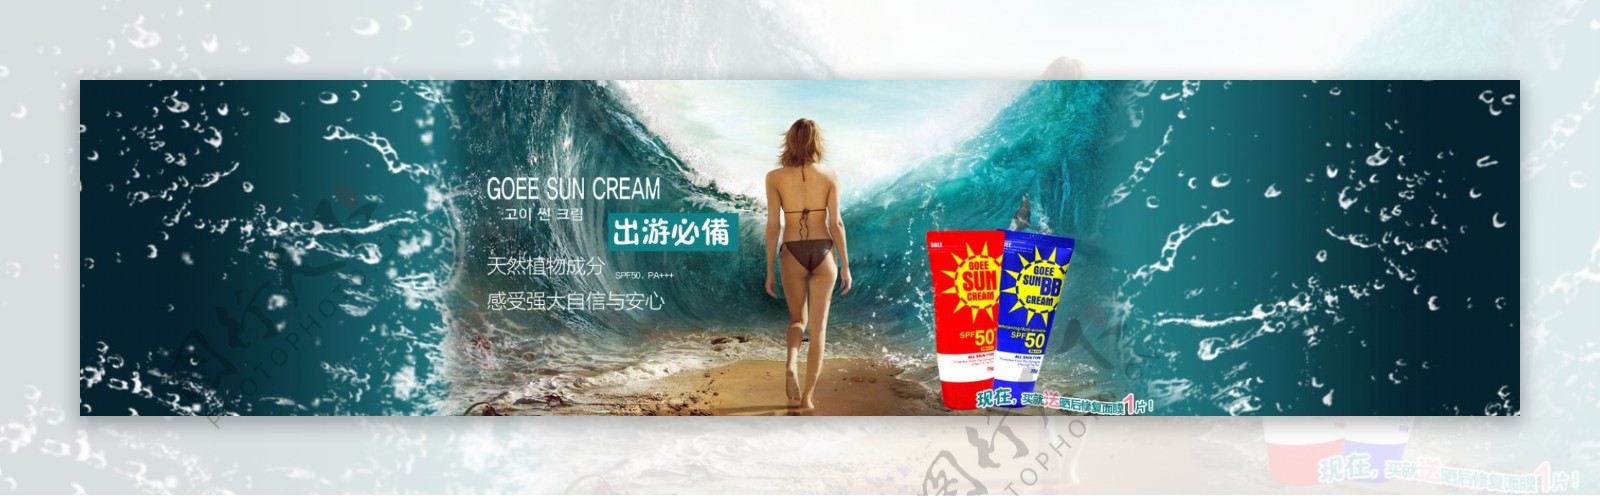 淘宝店铺首页海洋环绕化妆品广告